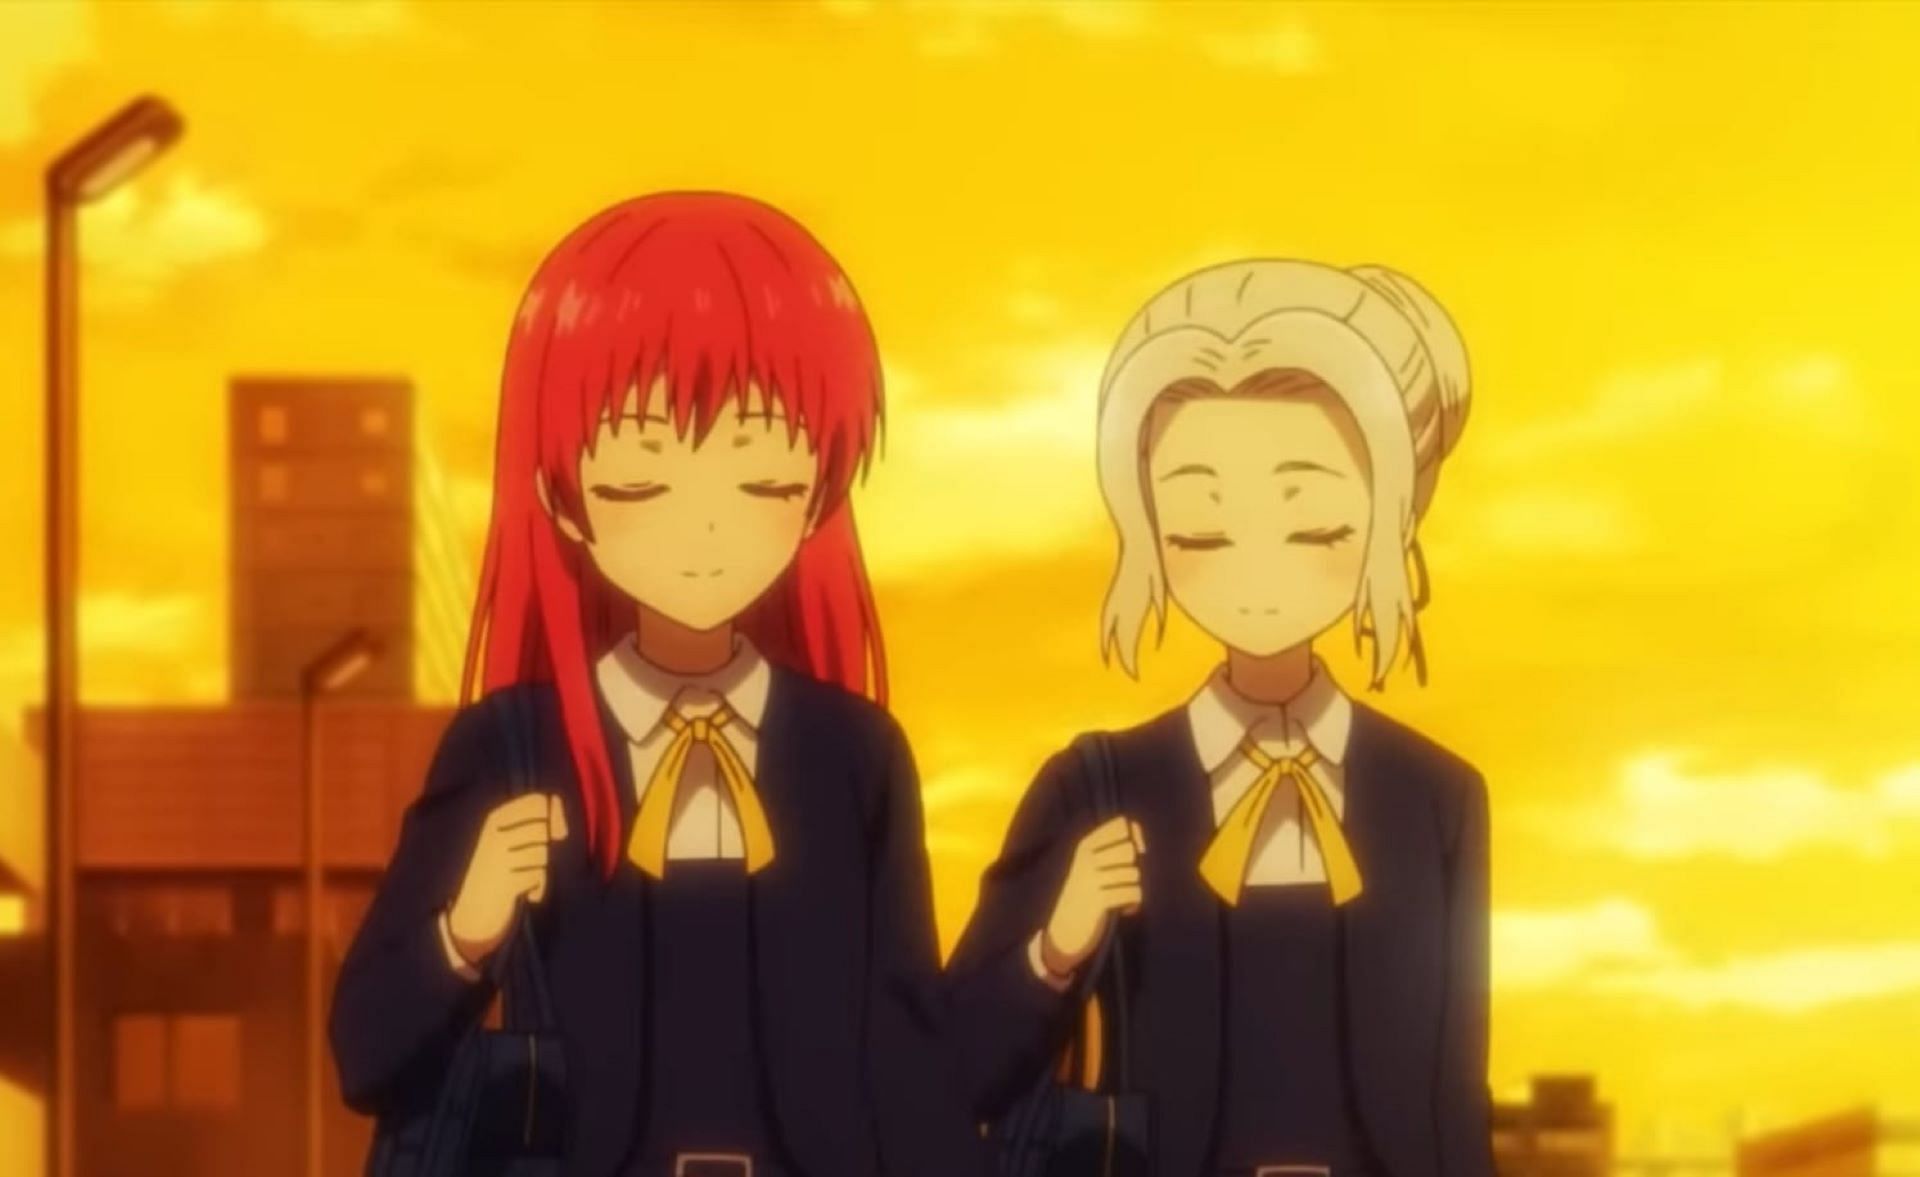 Shino and Saki Saki, as seen in the anime (Image via SynergySP Studios)